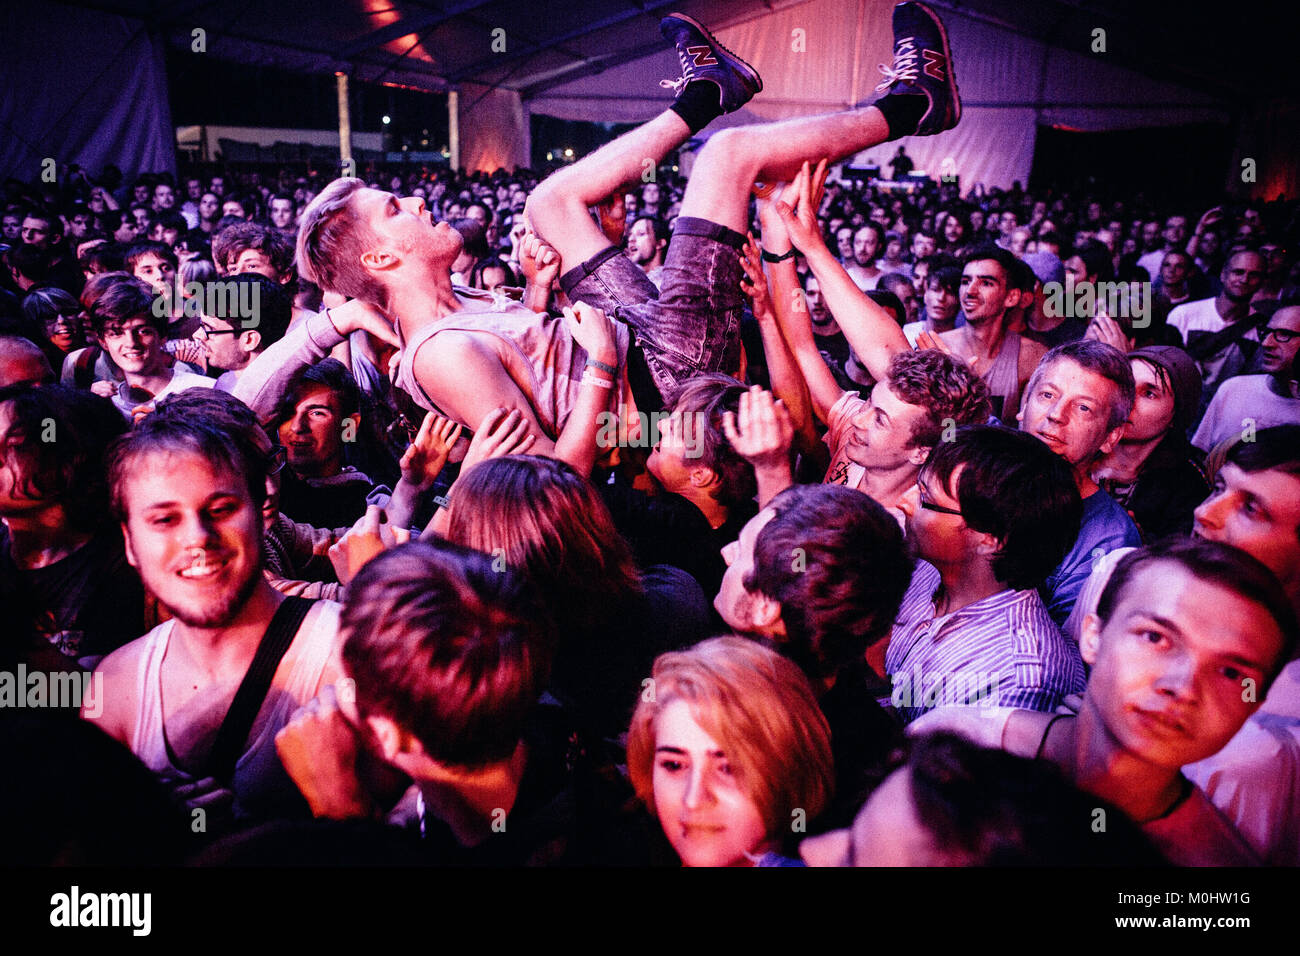 La foule concert polonais devenir fou et n'crowd surfing devant la scène pendant les concerts avec le groupe de rock psychédélique américain Thee Oh Sees. Pologne 2013. Banque D'Images